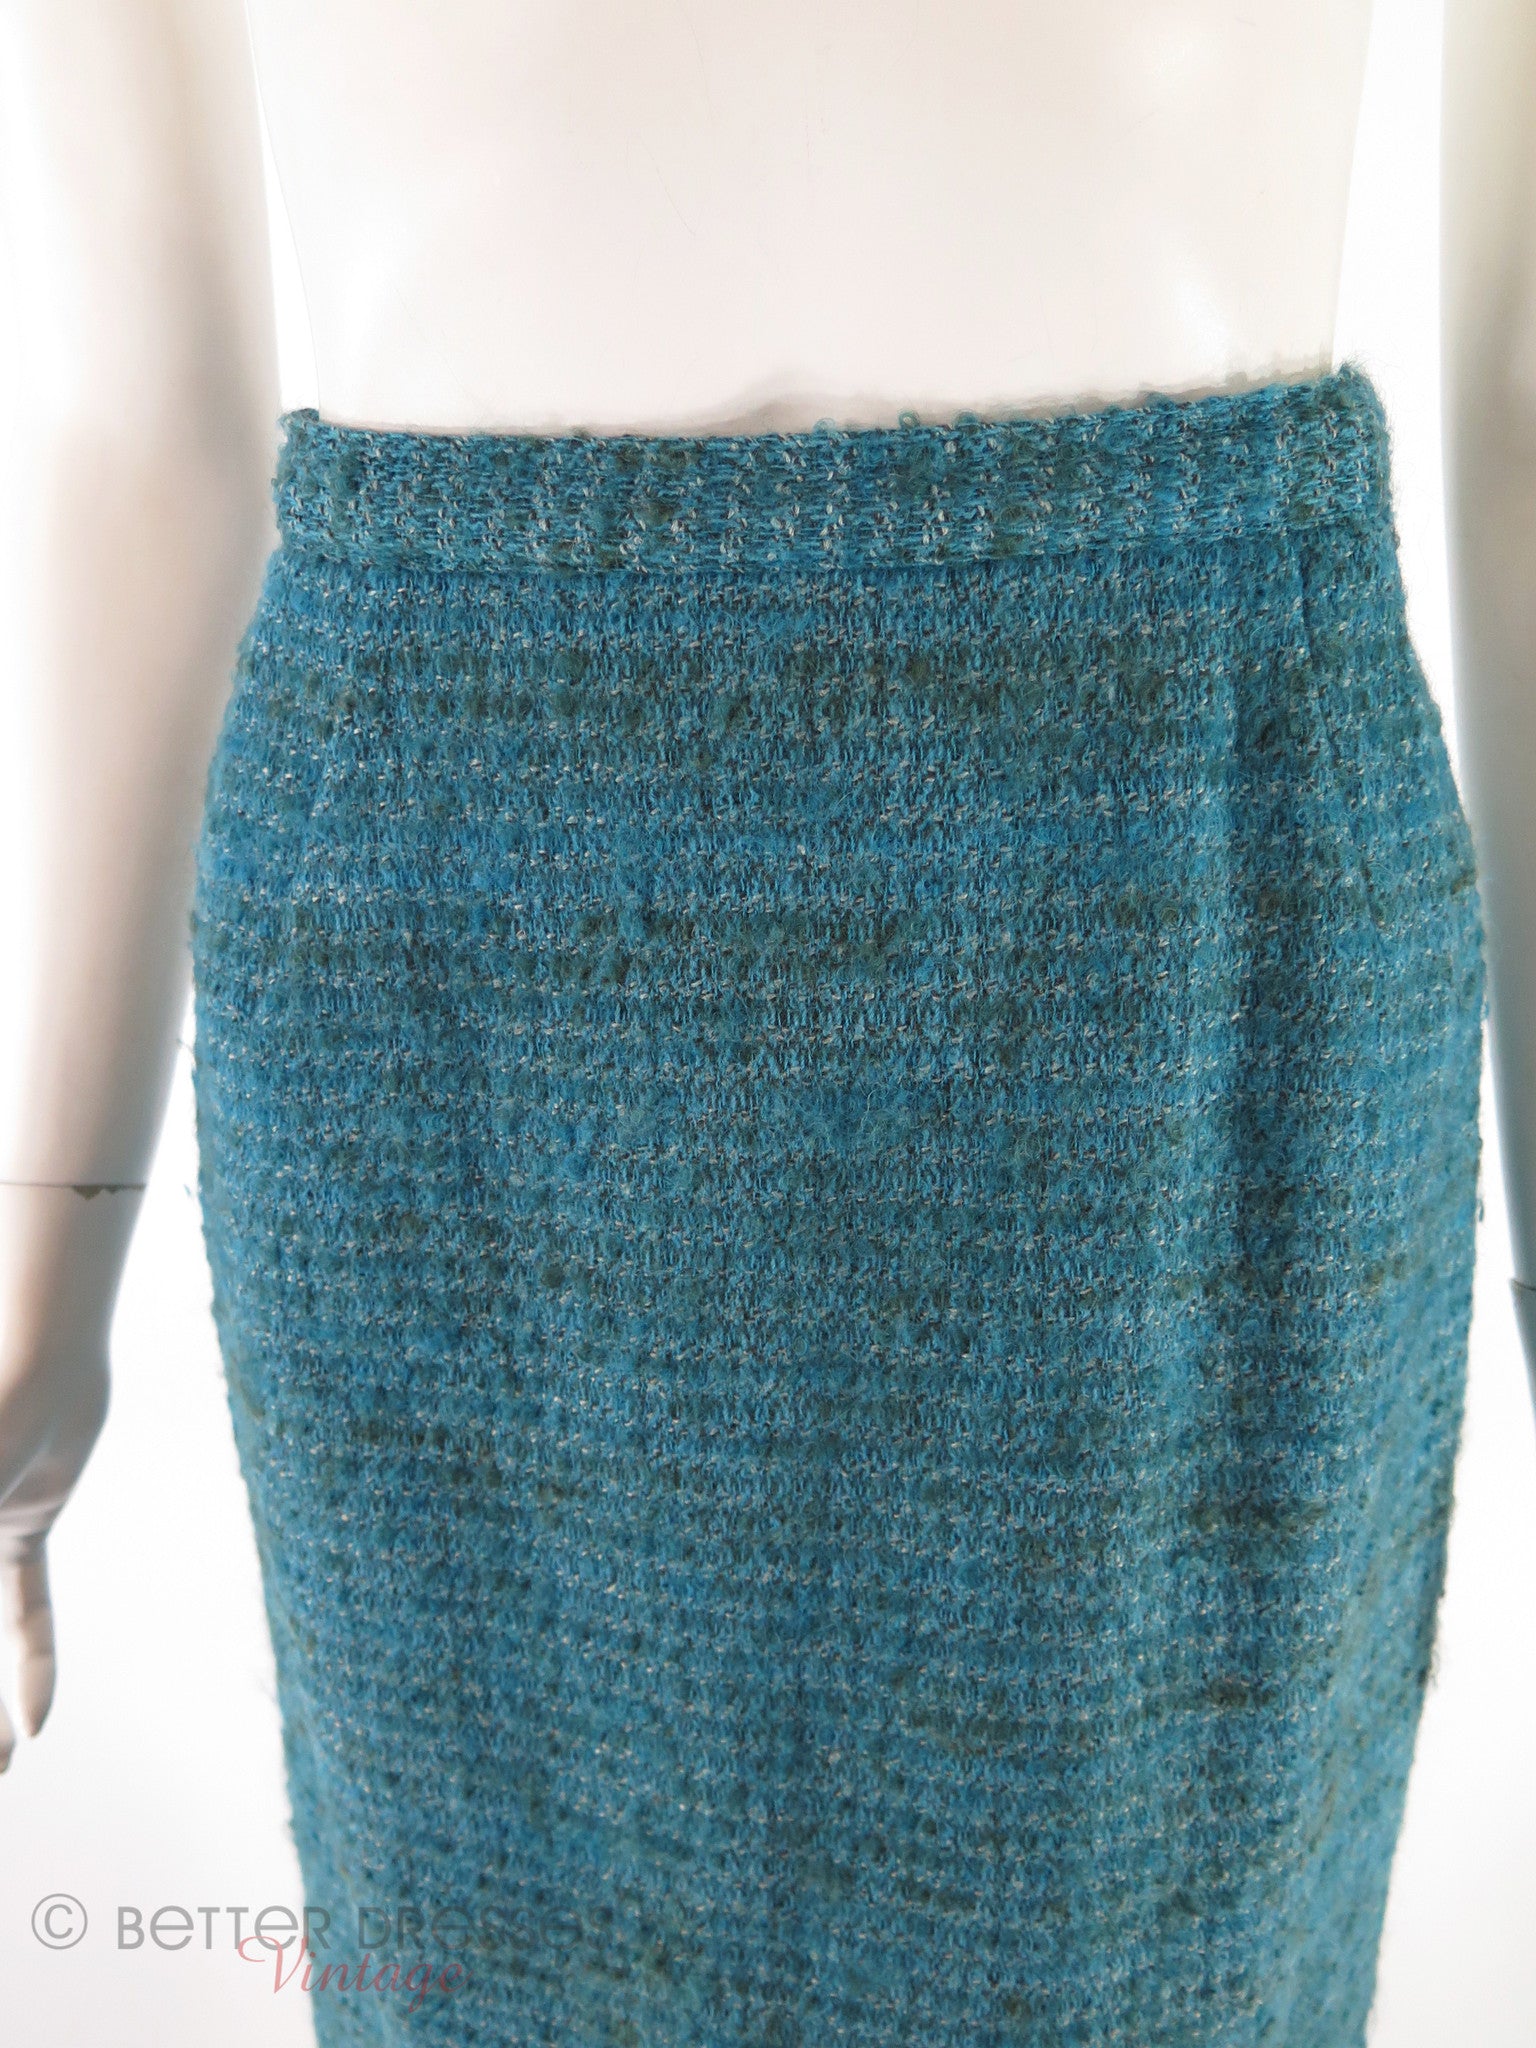 60s Teal Tweed Skirt Suit - sm, med – Better Dresses Vintage